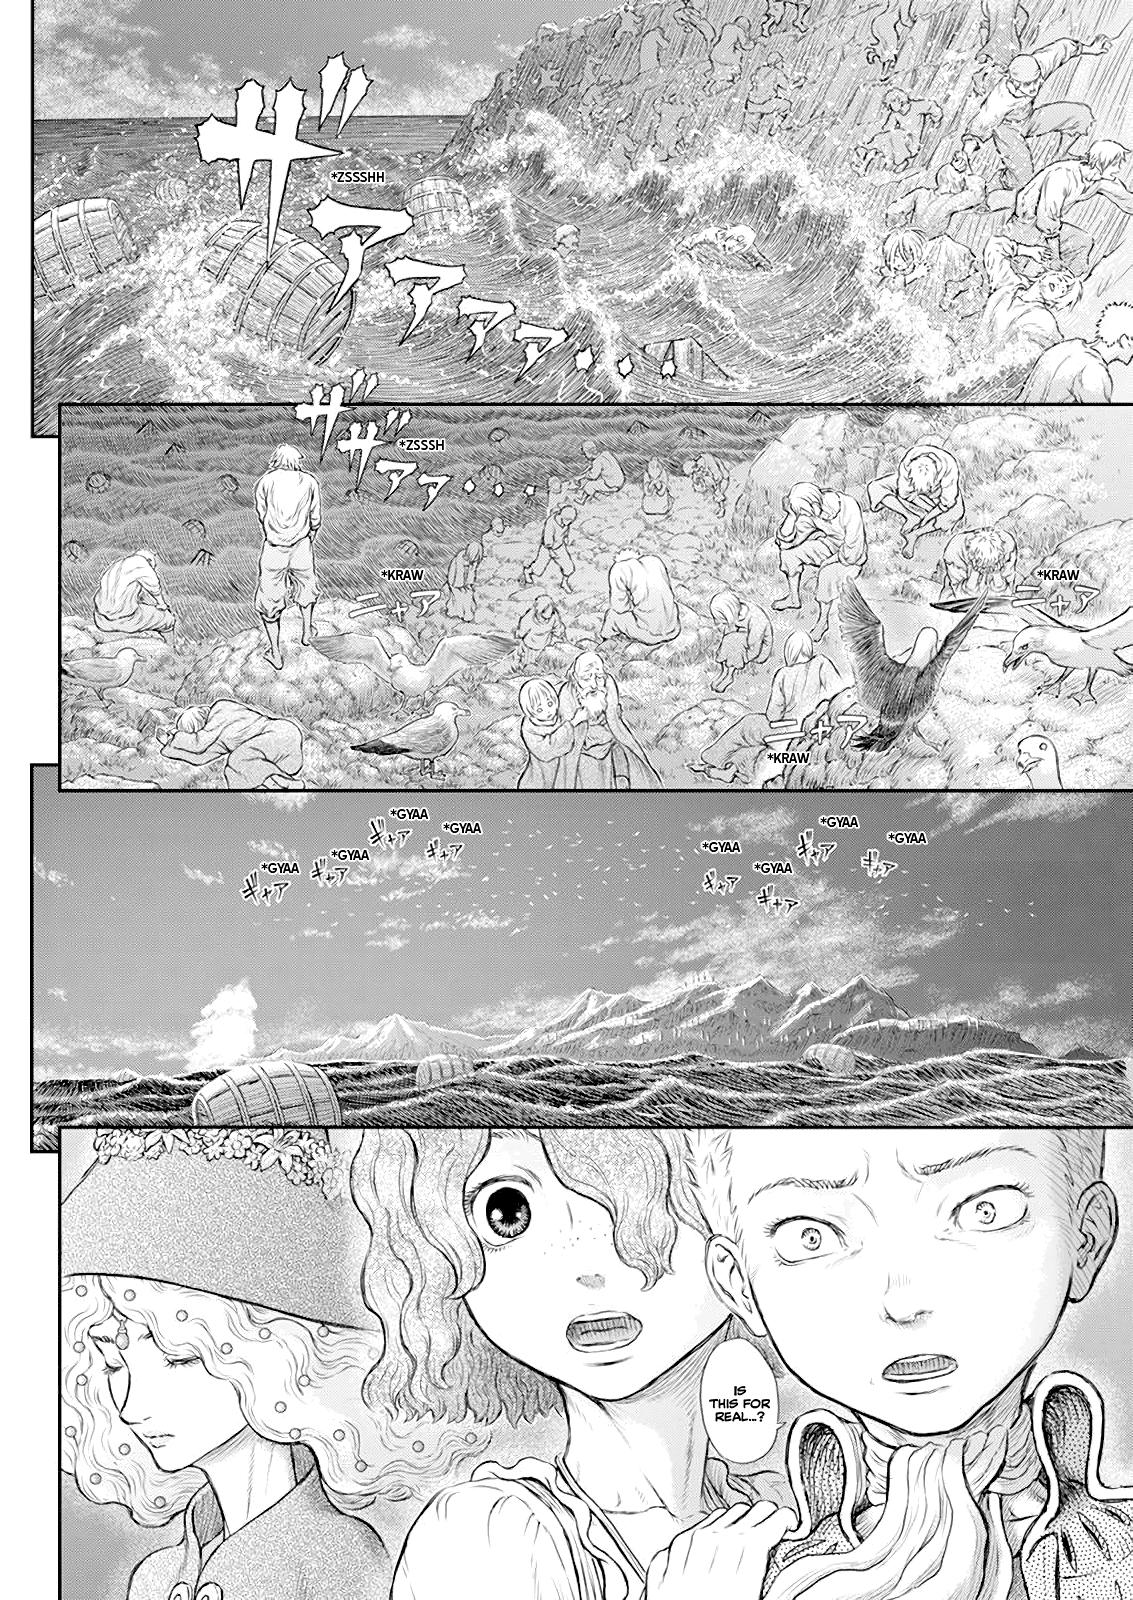 Berserk Manga Chapter 369 image 09